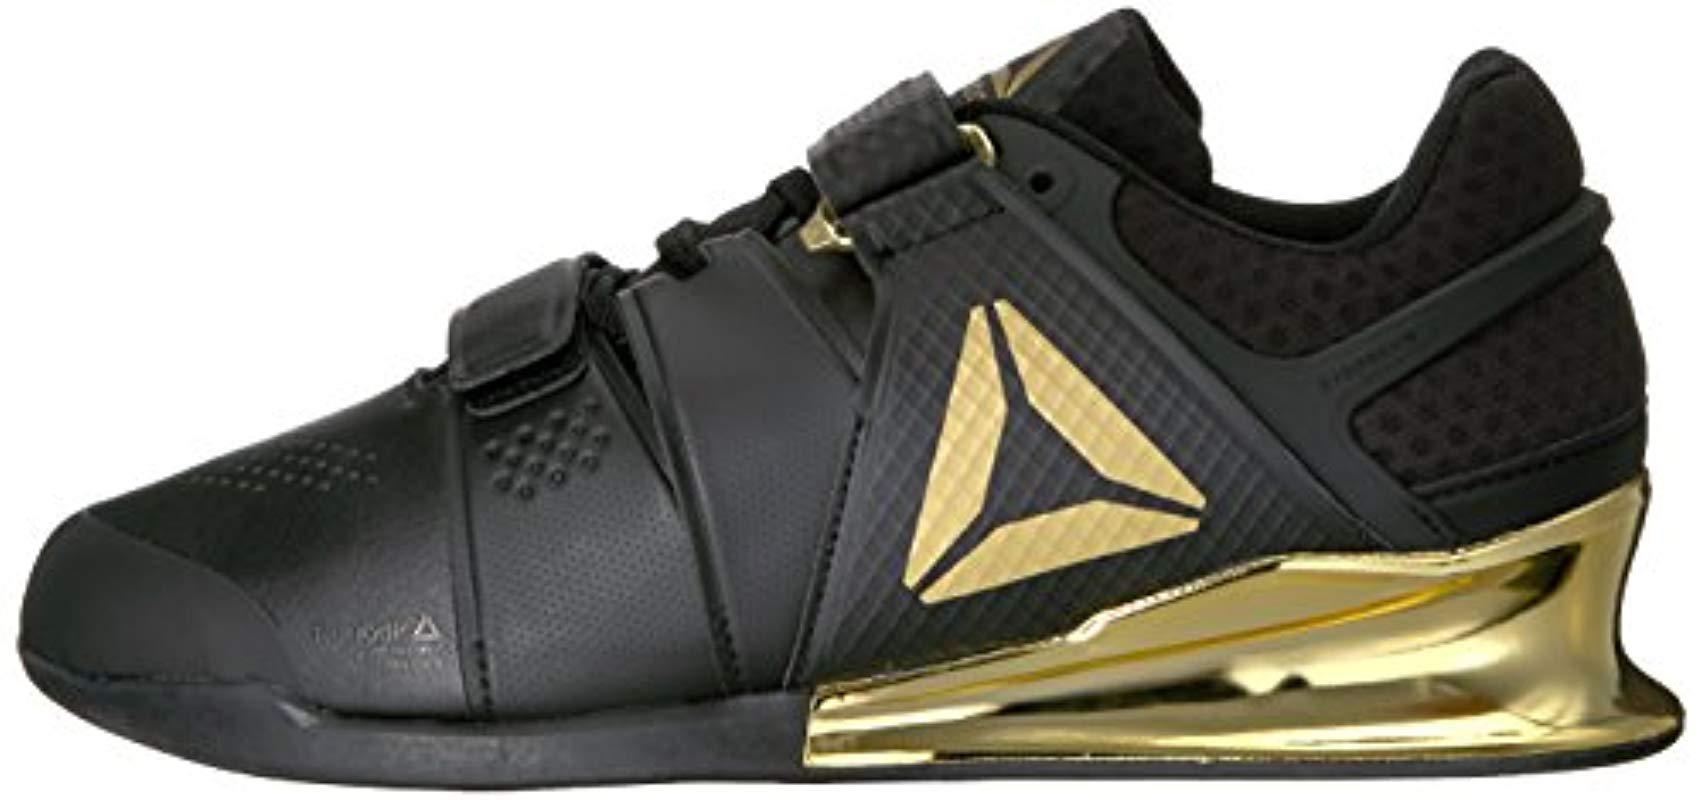 Reebok Rubber Legacy Lifter Sneaker in Black/Gold (Black) for Men - Lyst